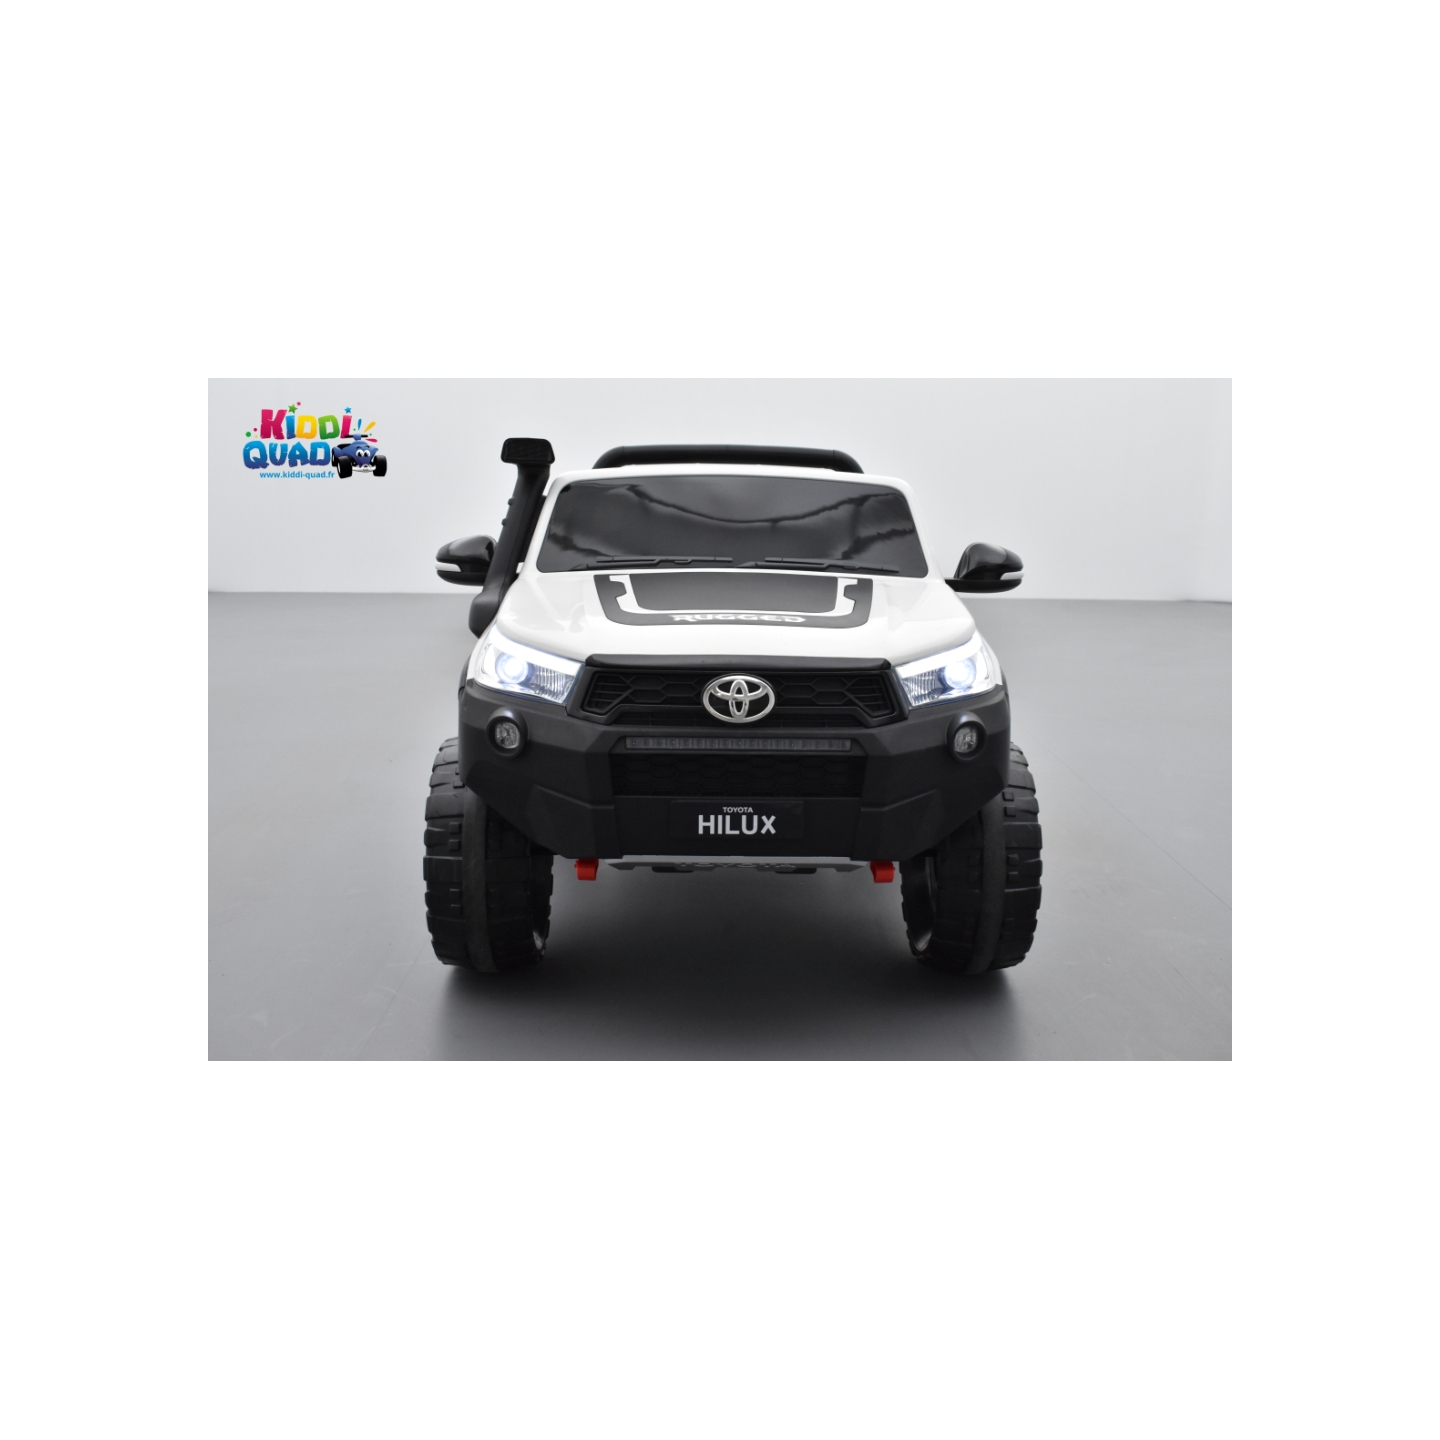 Toyota Hilux blanc 24 Volts électrique pour enfant écran mp4, 4x4 électrique enfant 2 places